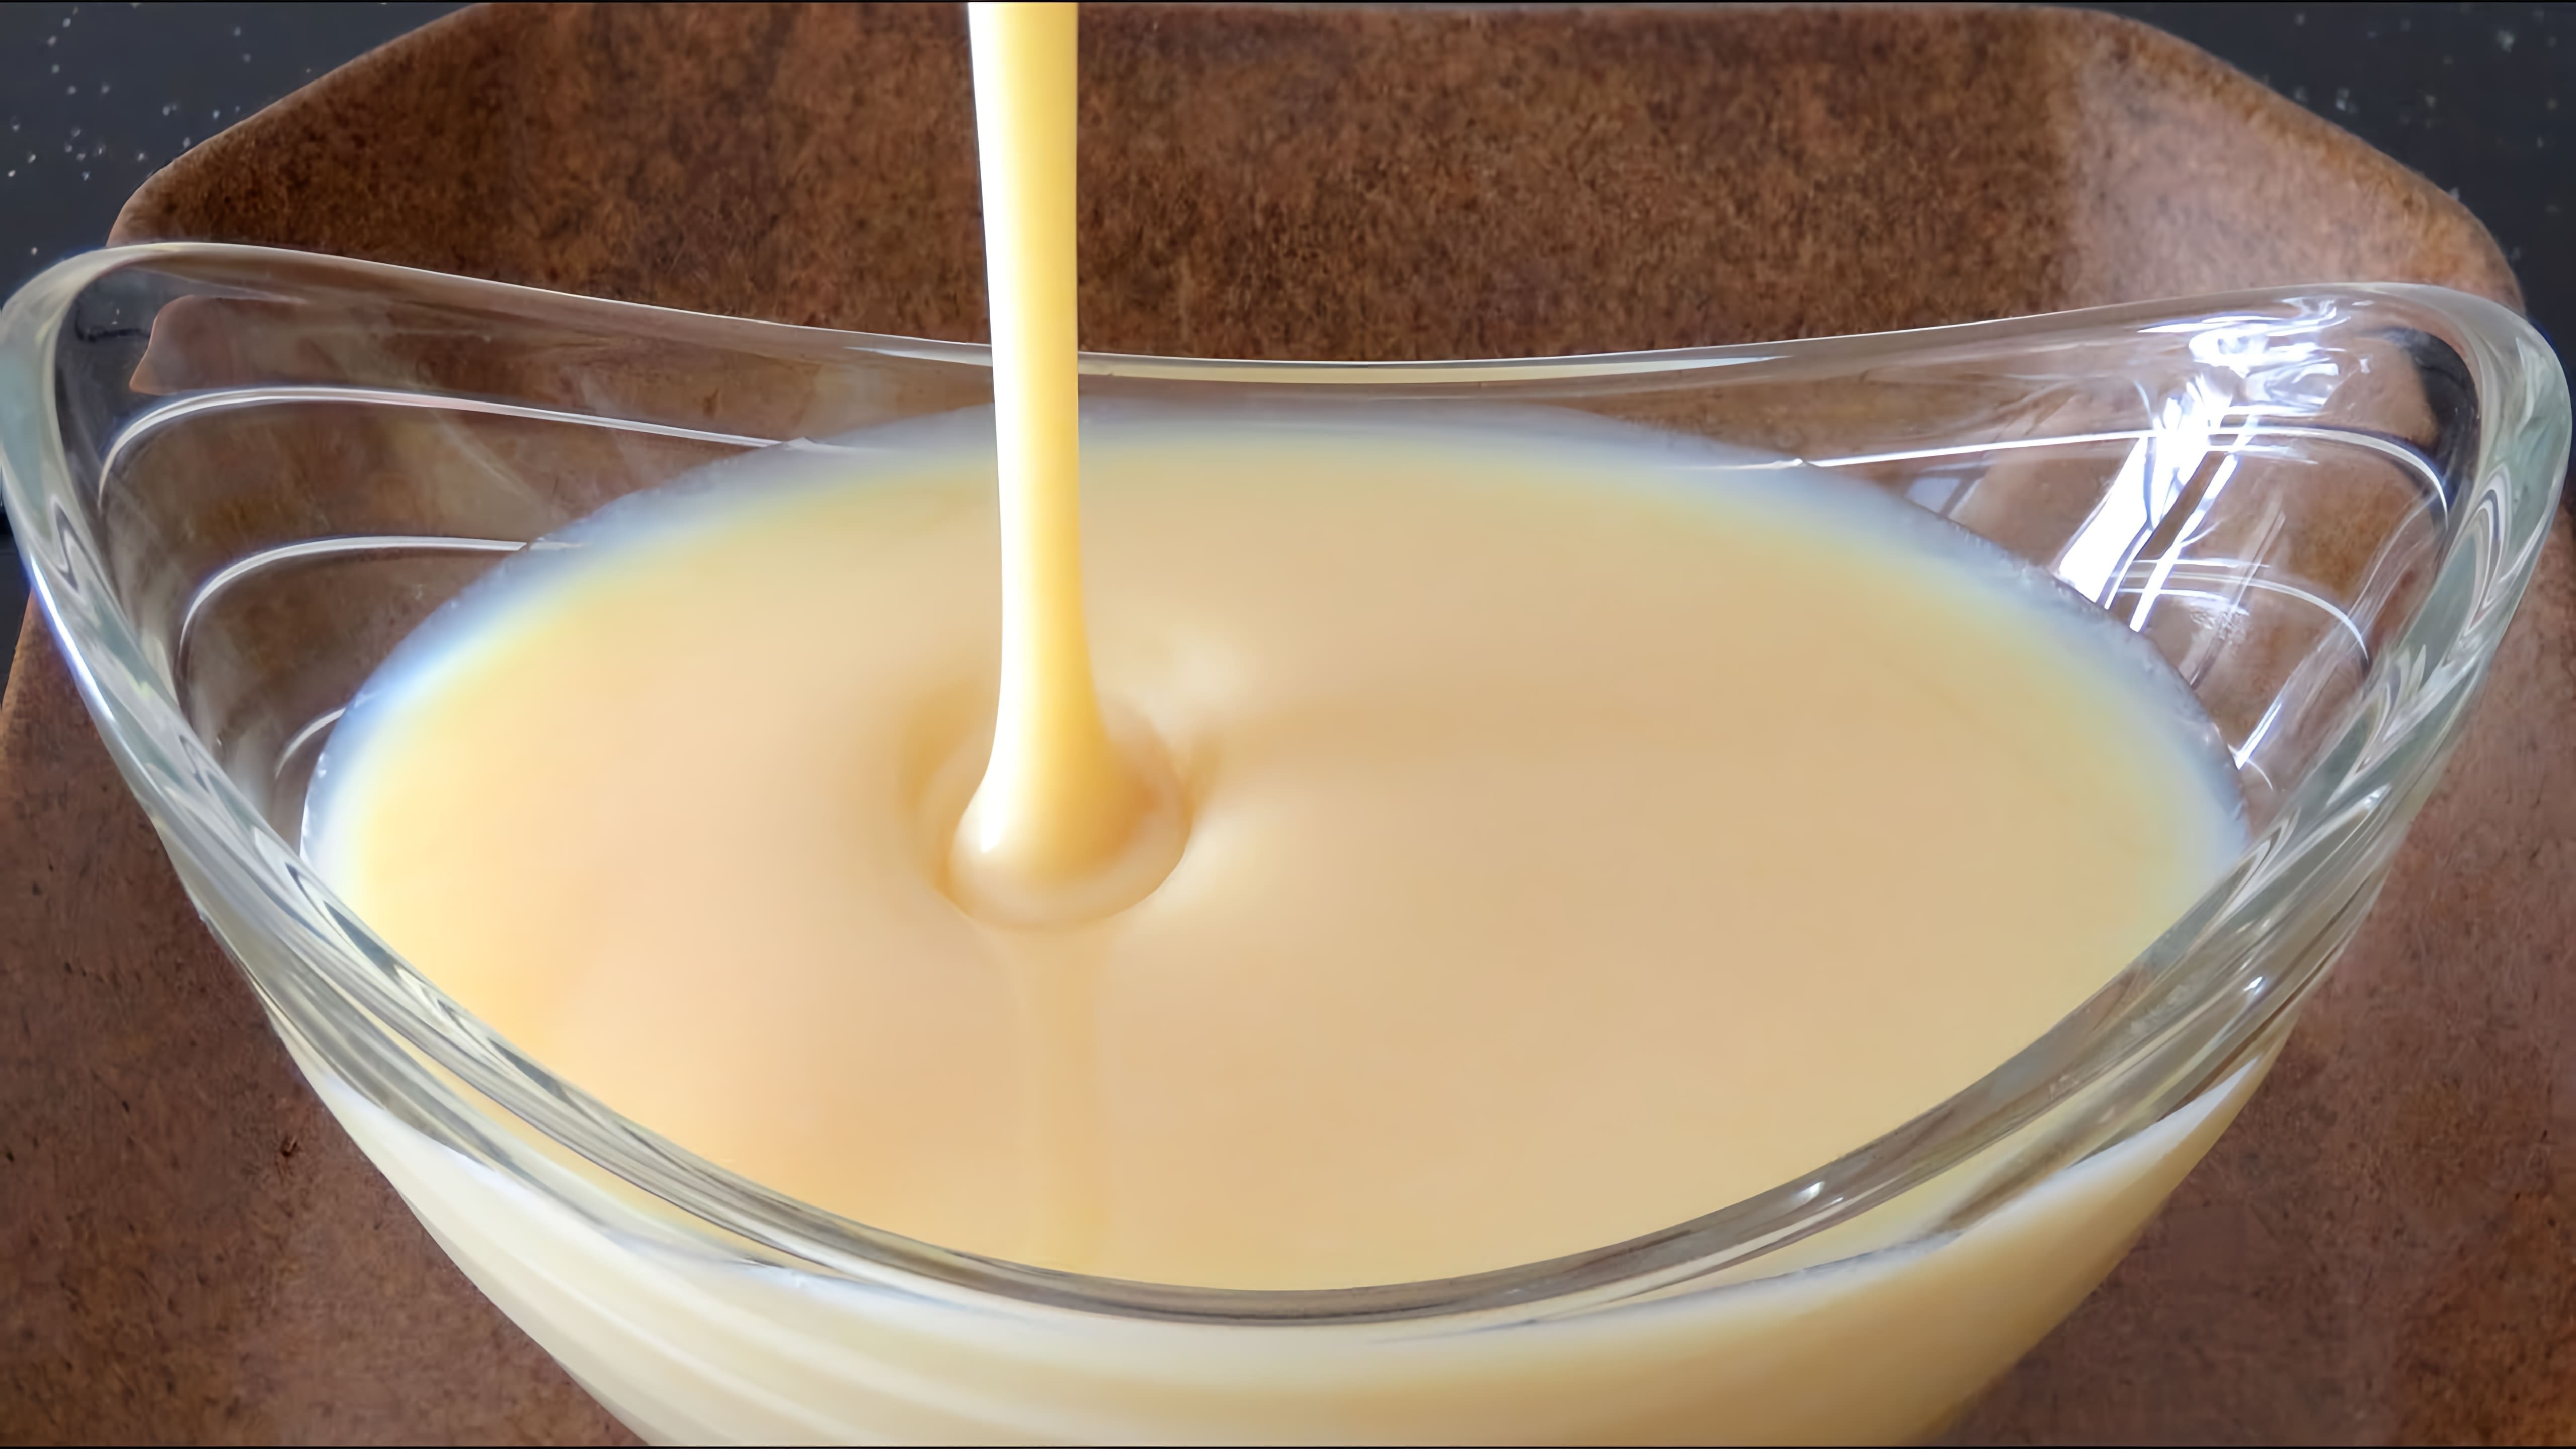 В этом видео показано, как приготовить сгущенку из сухого молока